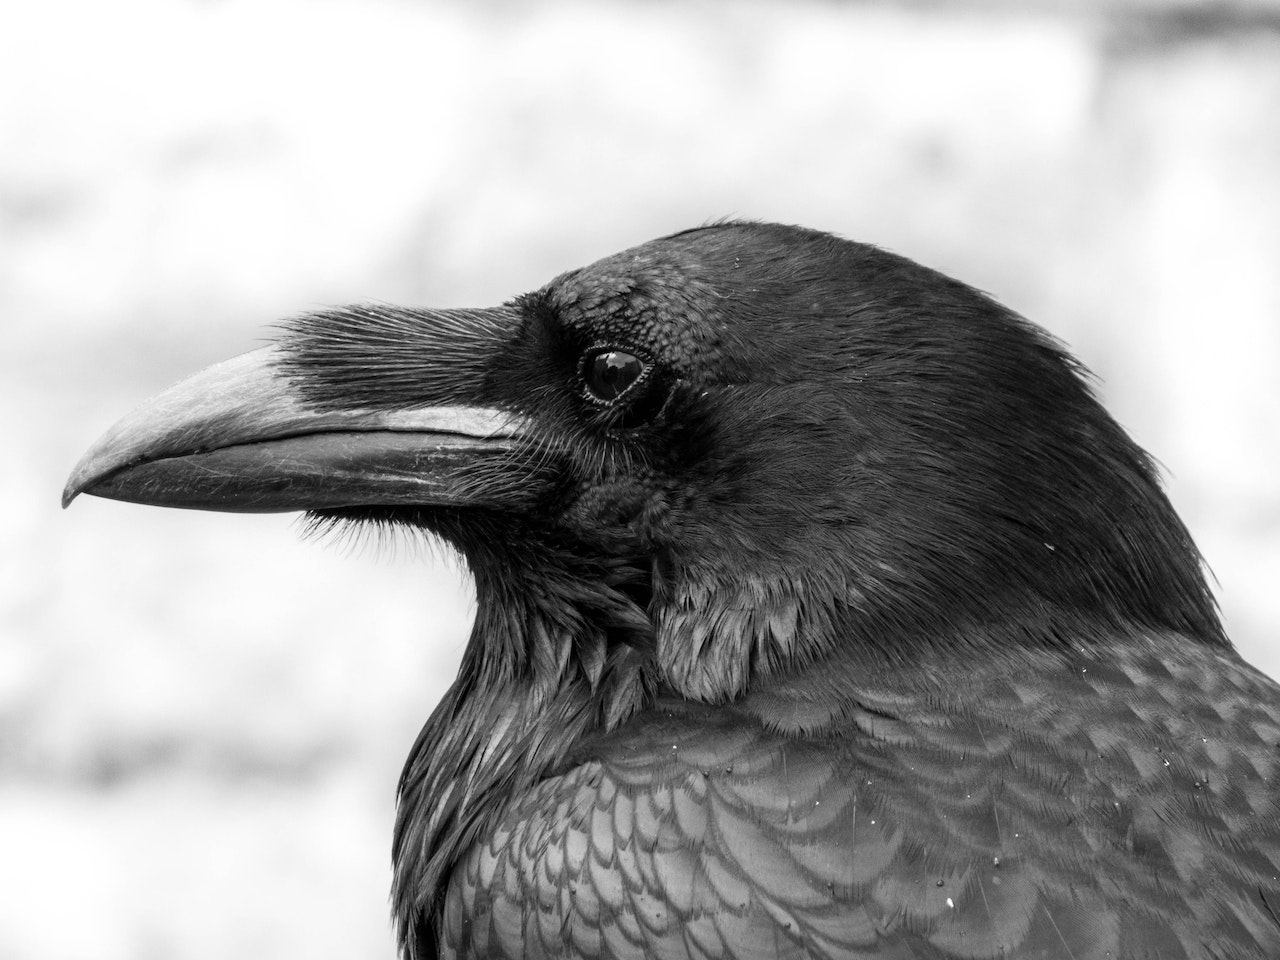 A Close-up Shot of a Black Bird